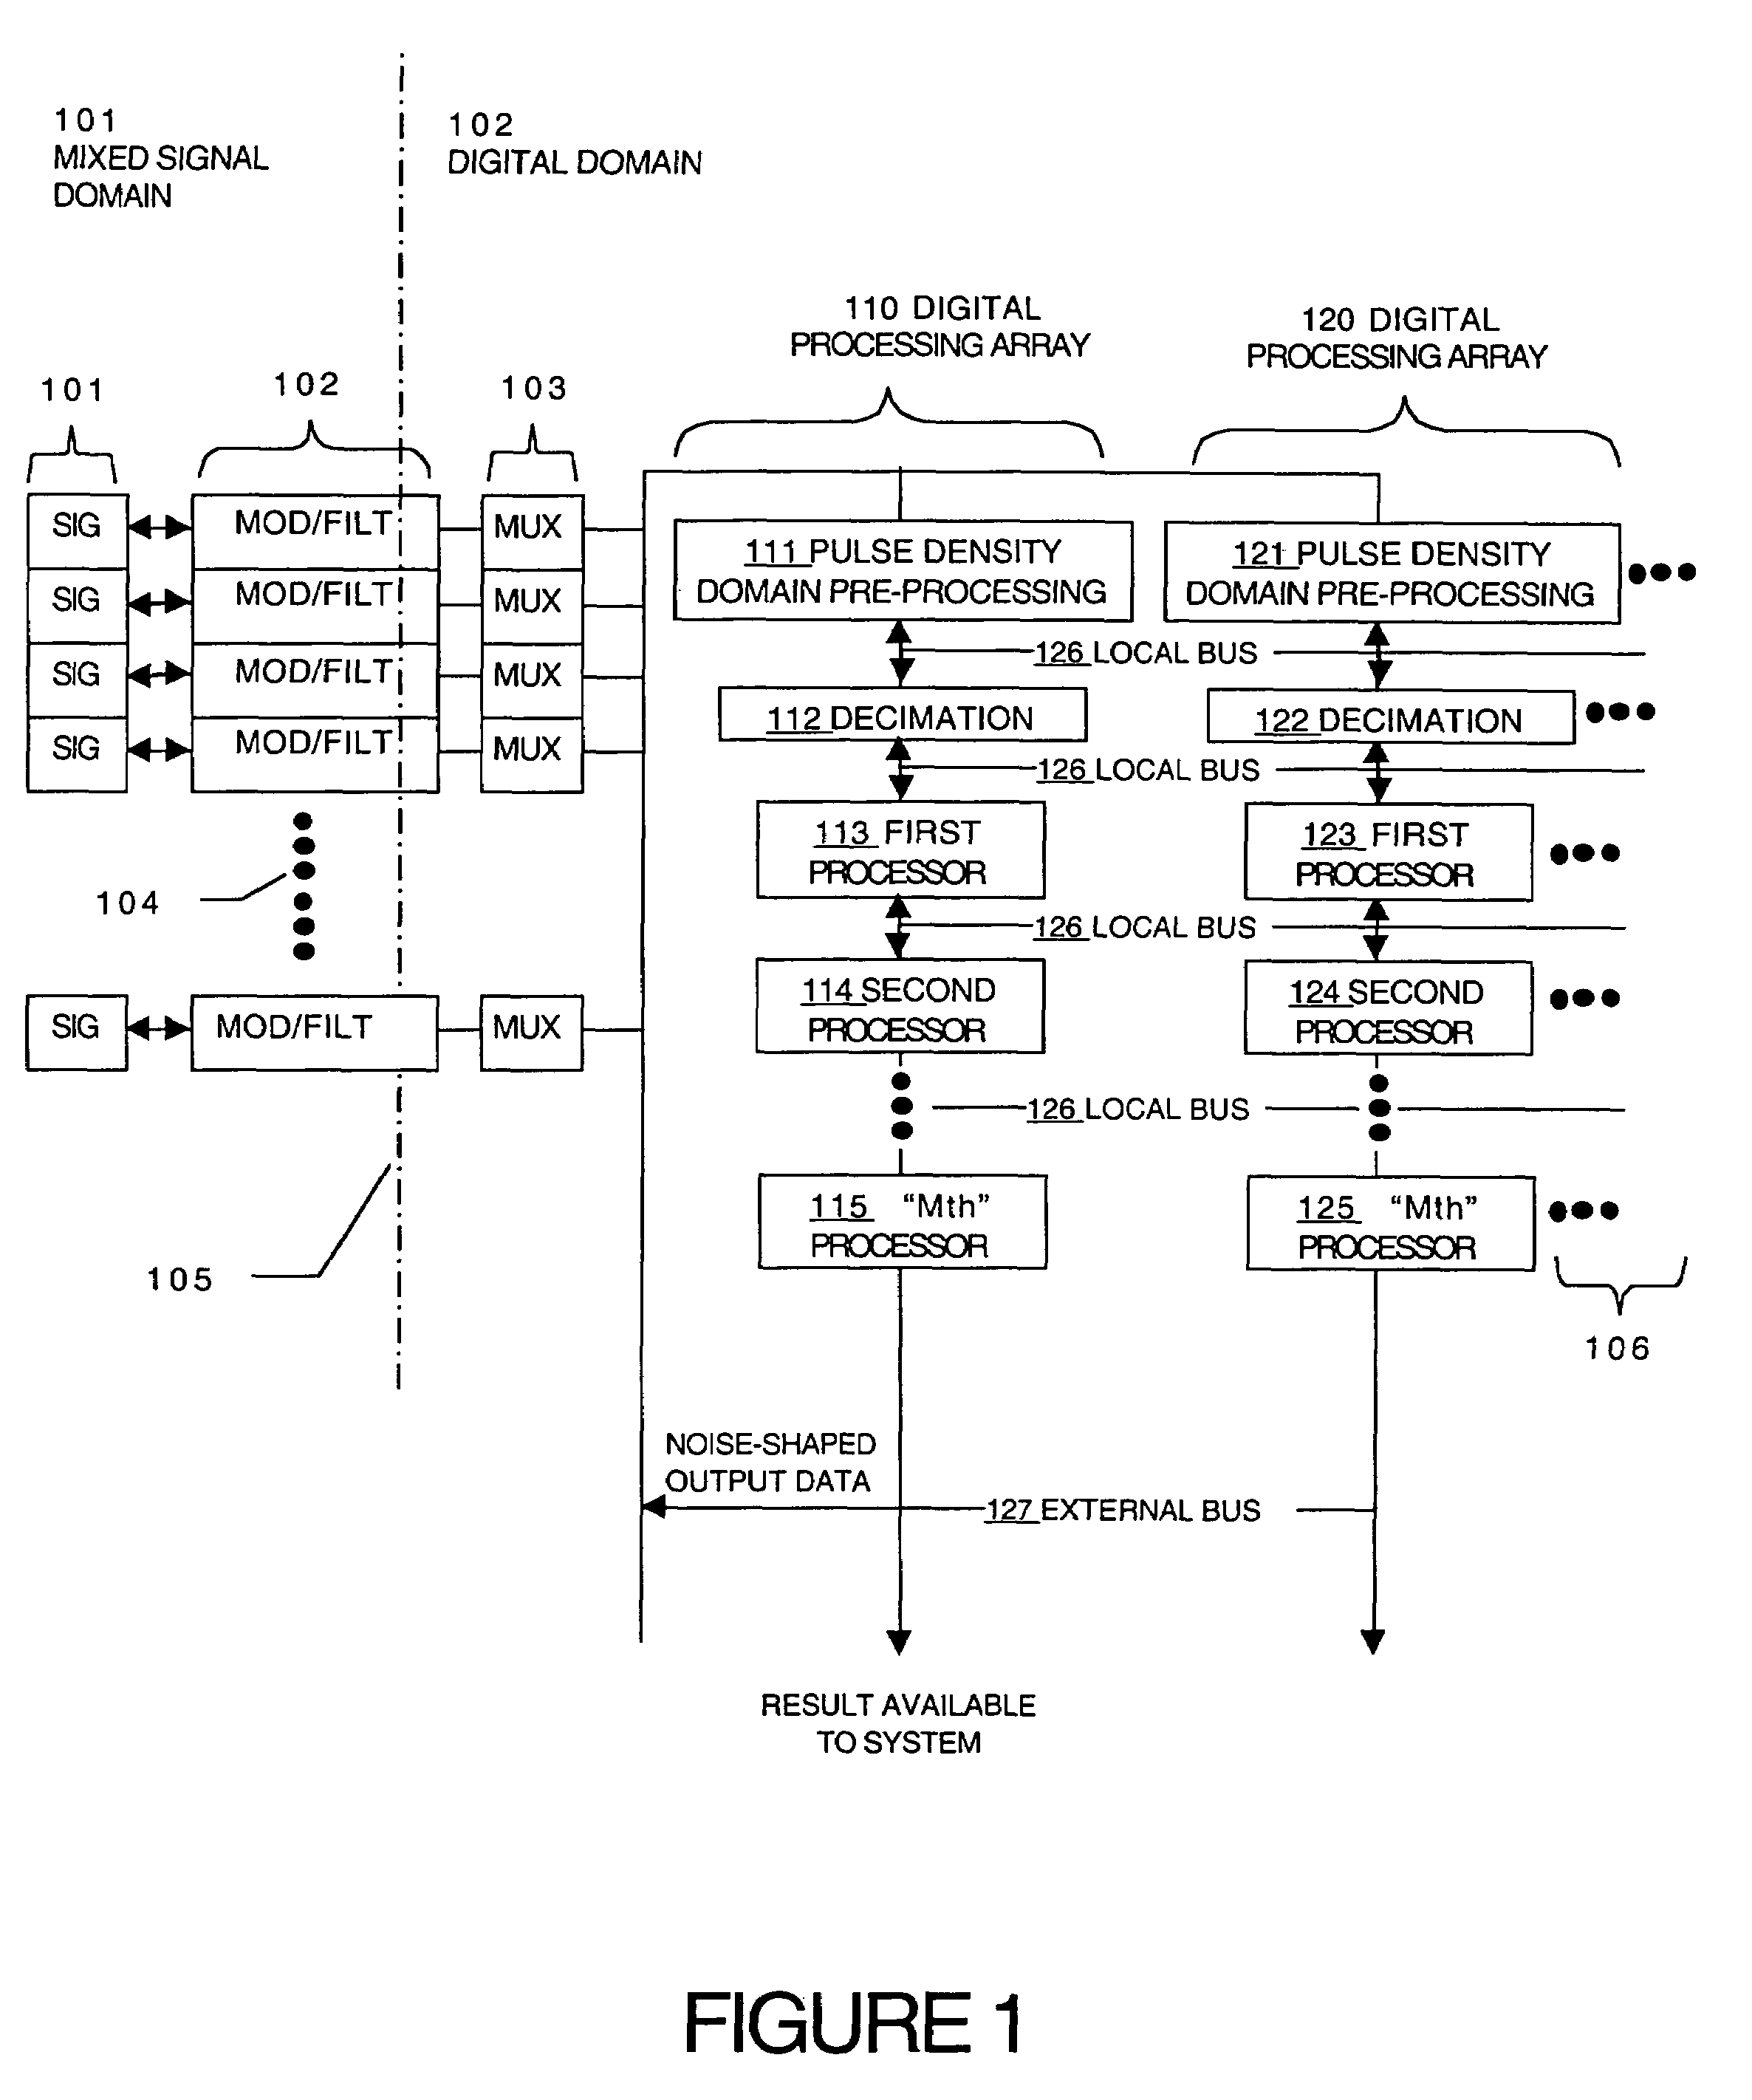 Analog I/O with digital signal processor array